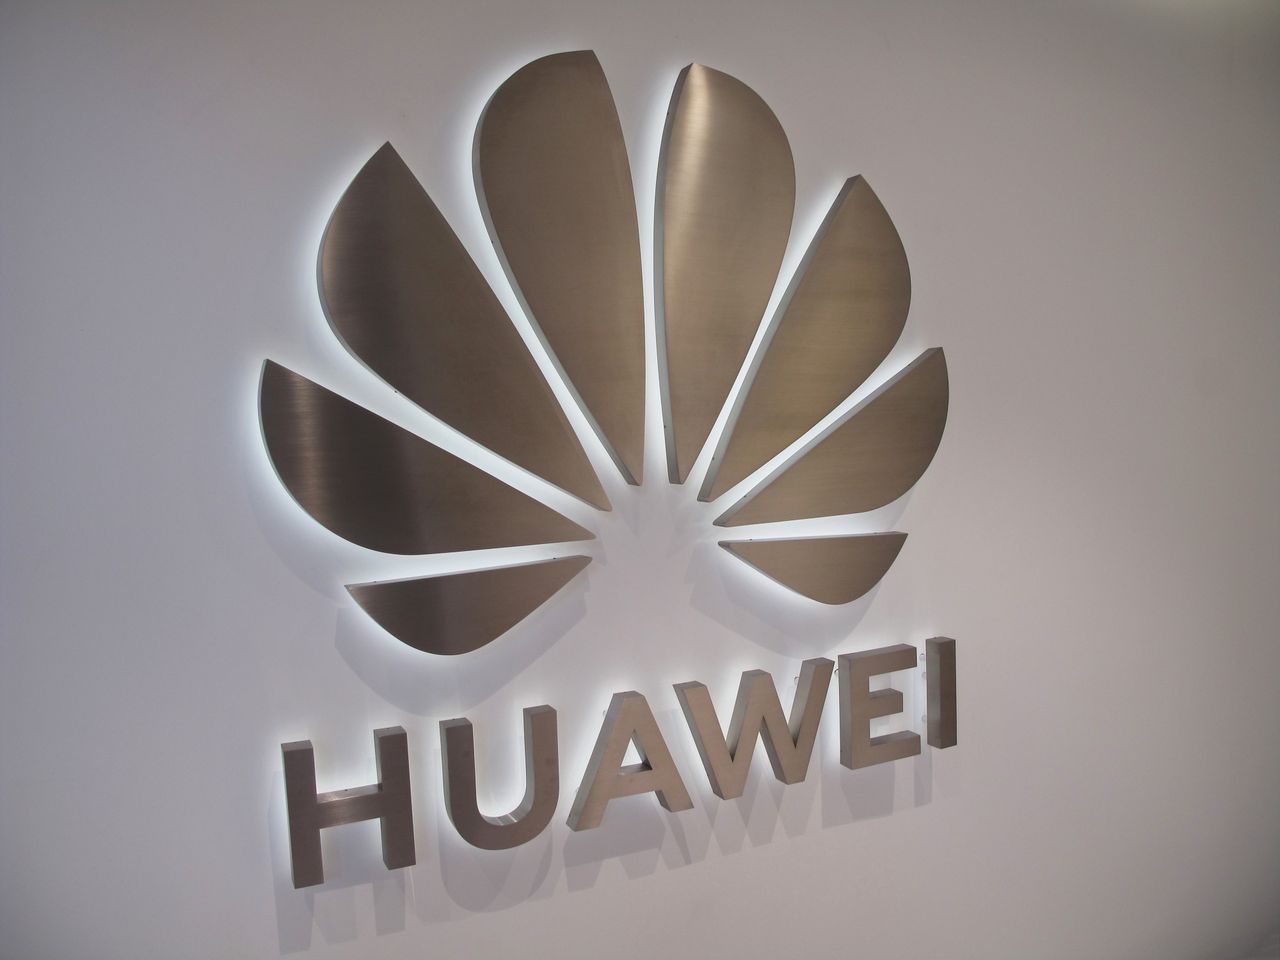 Huawei. Prezes firmy liczy, że nowy prezydent USA będzie lżej traktował Chiny - Pod rządami Trumpa Huawei znalazło się na czarnej liście